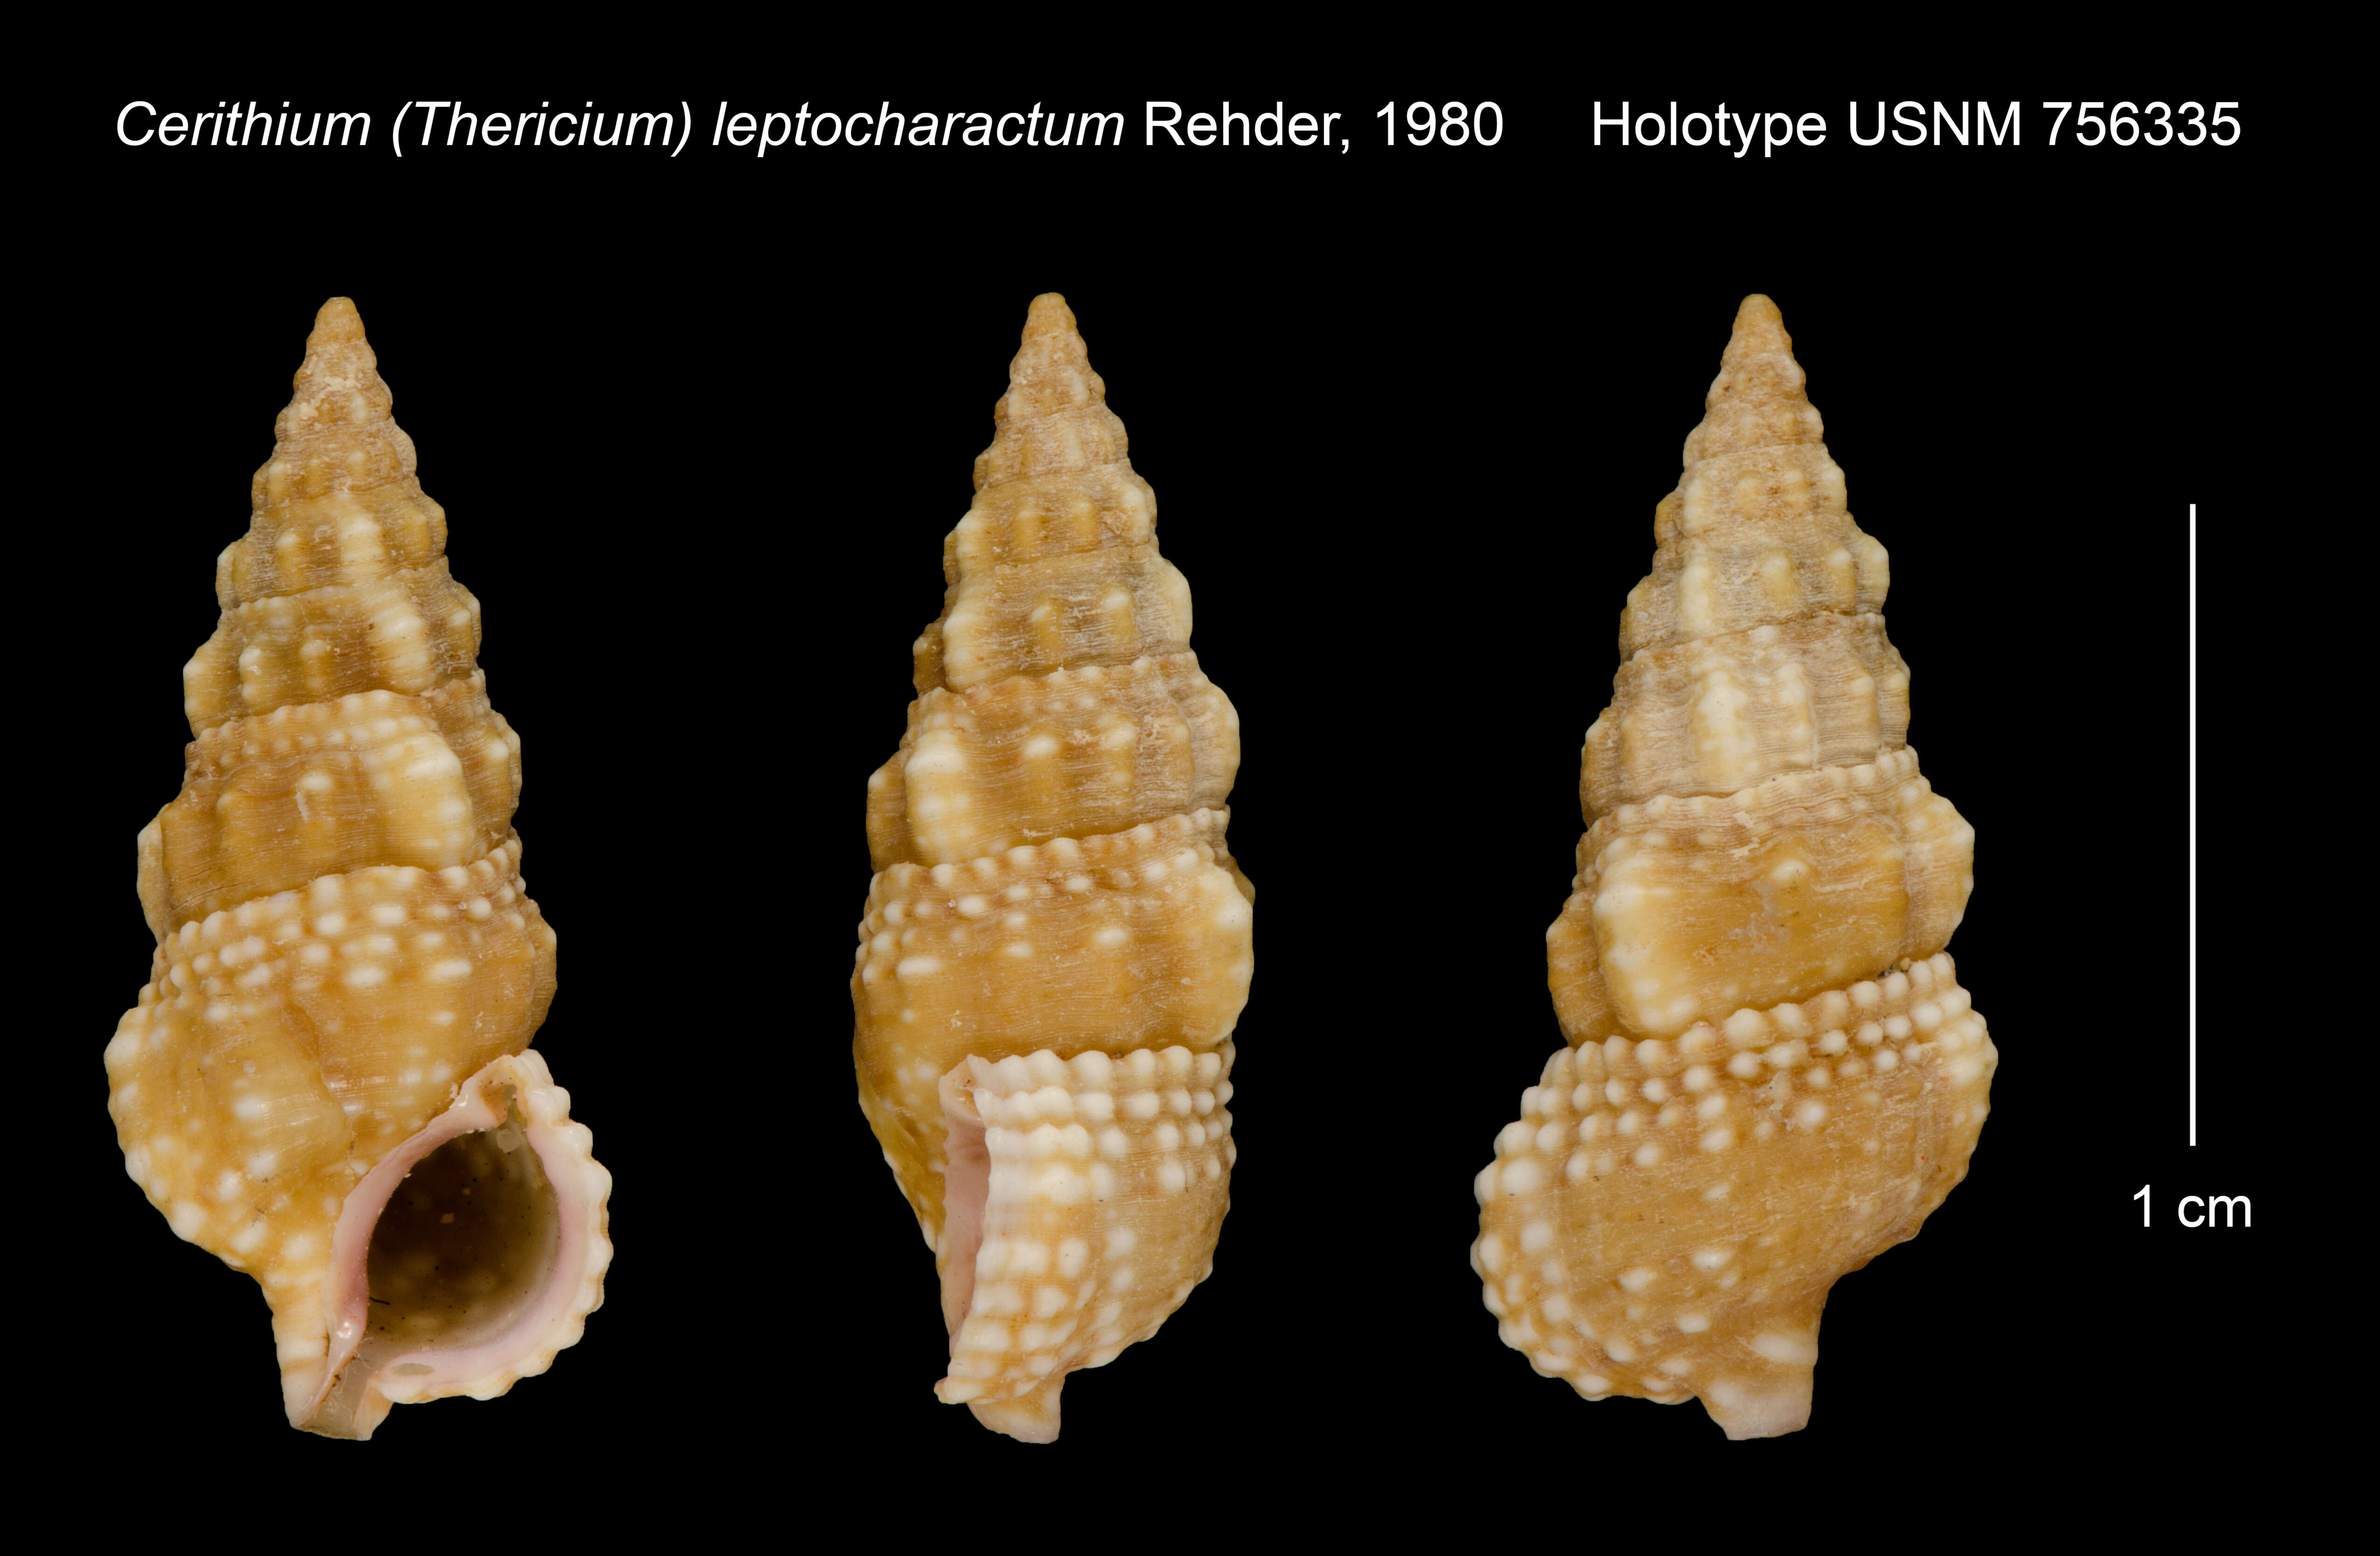 Image of Cerithium leptocharactum Rehder 1980